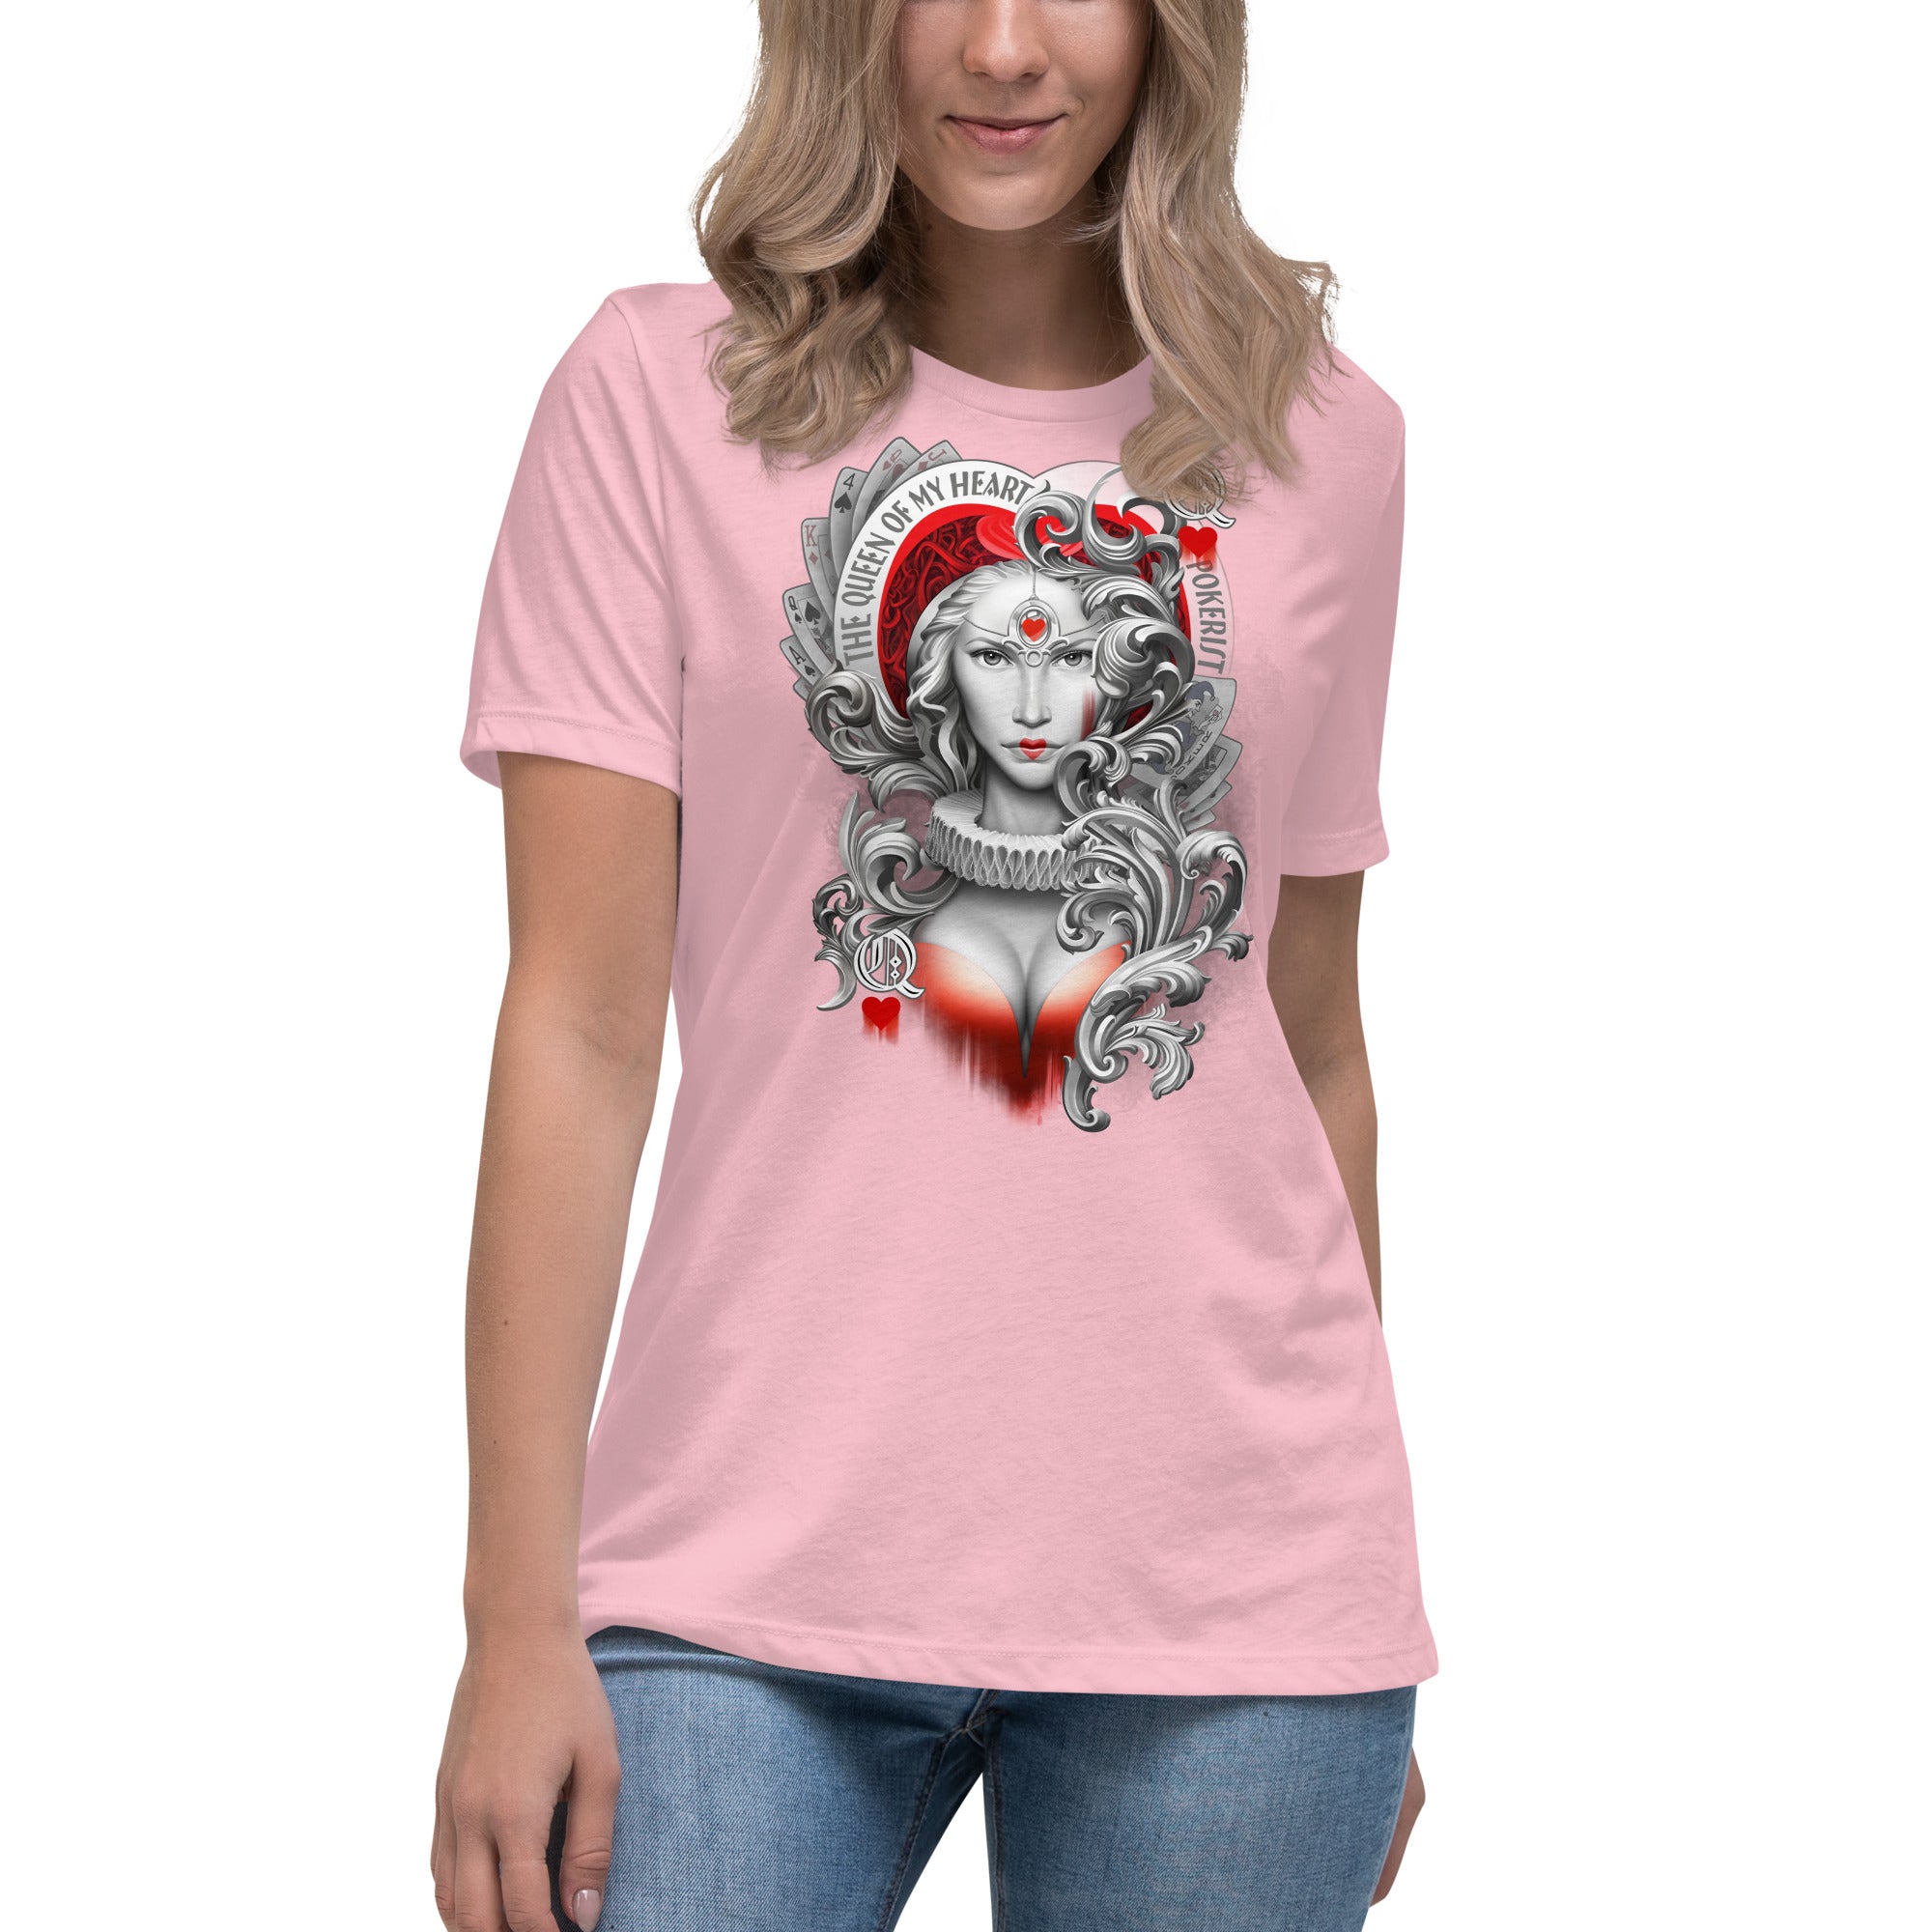 Queen Hearts - Women's Relaxed T-Shirt